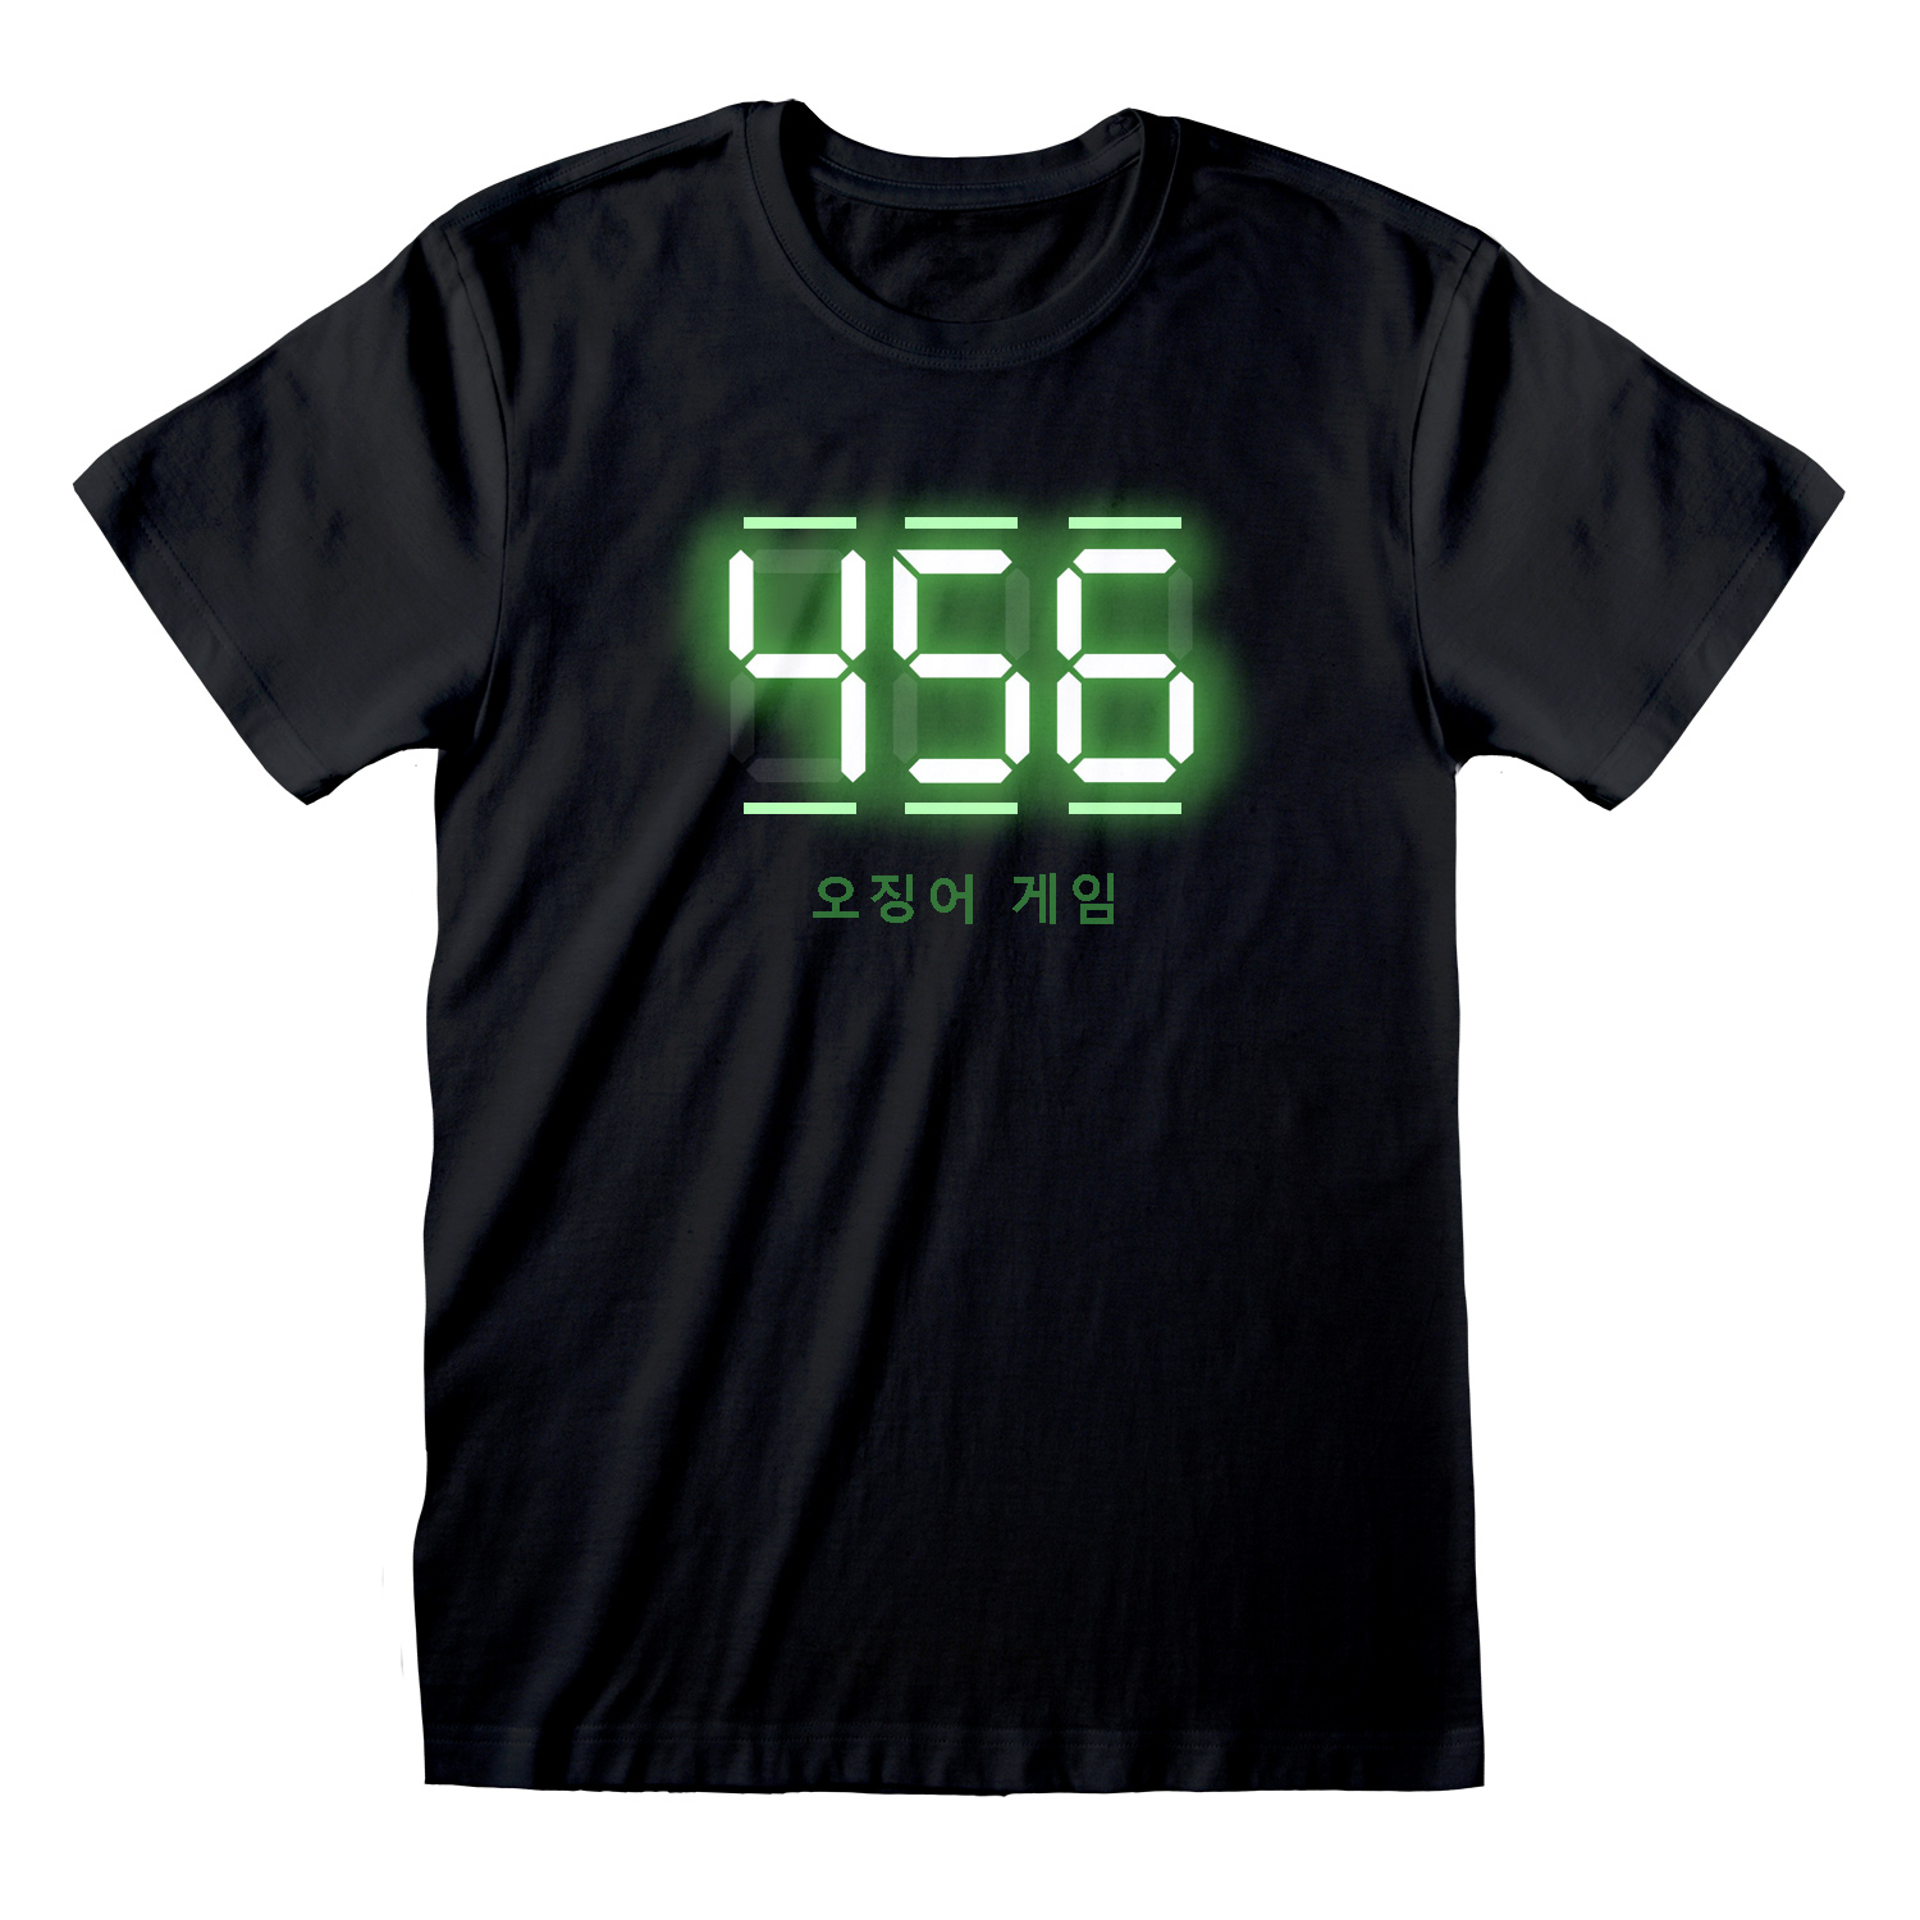 Squid Game - T-shirt unisexe Noir Texte numérique 456 - L